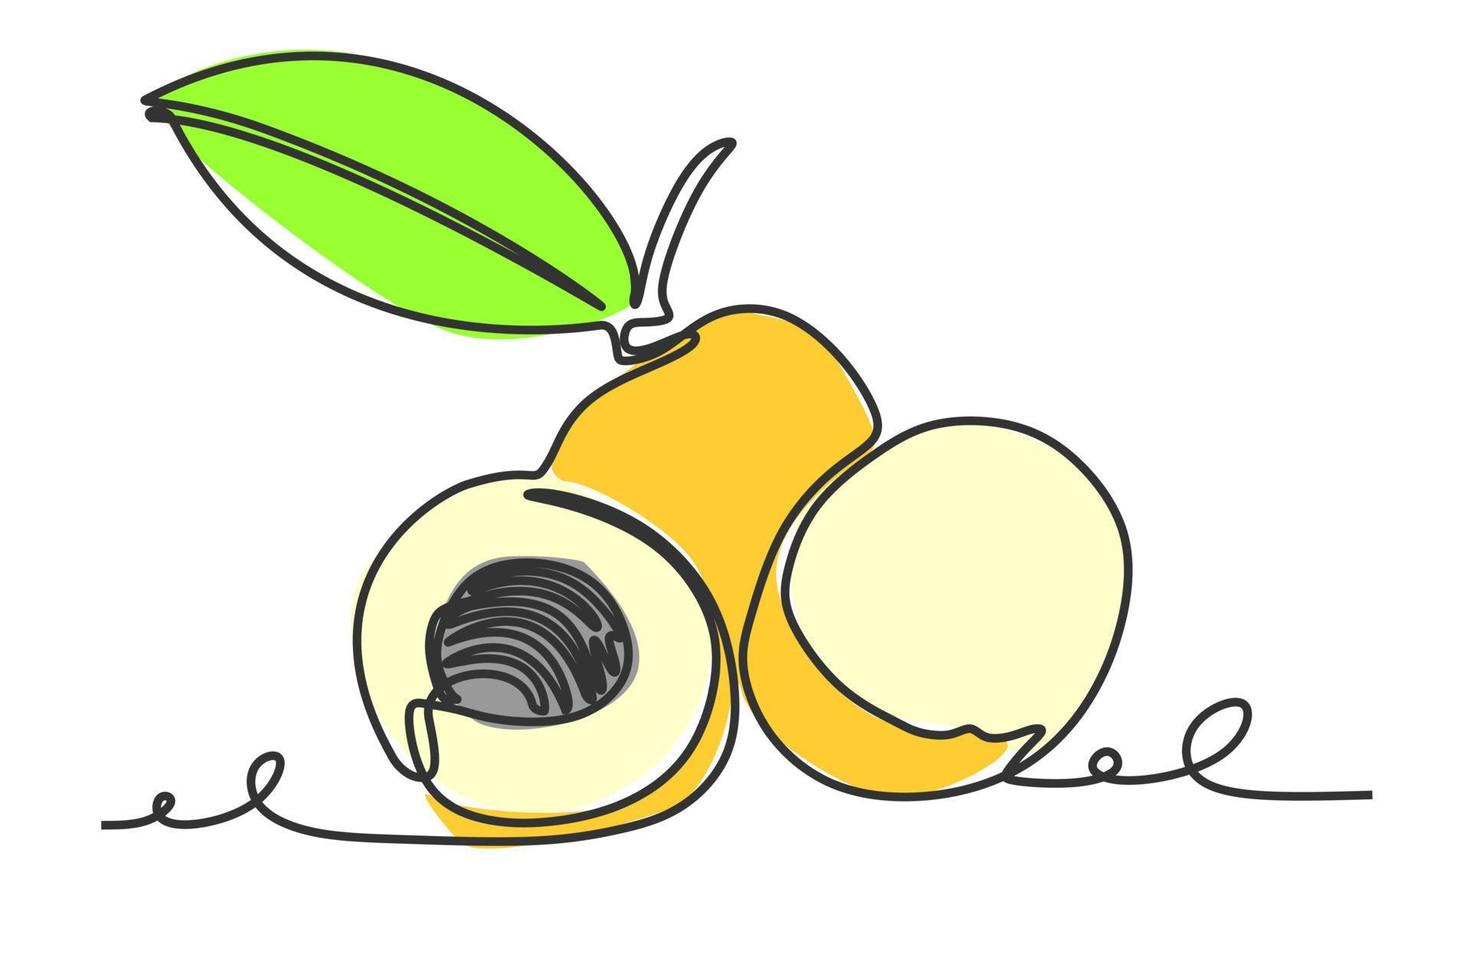 dibujo continuo de una línea de fruta longan. ilustración vectorial diseño de estilo dibujado a mano para un concepto de vida natural y saludable vector